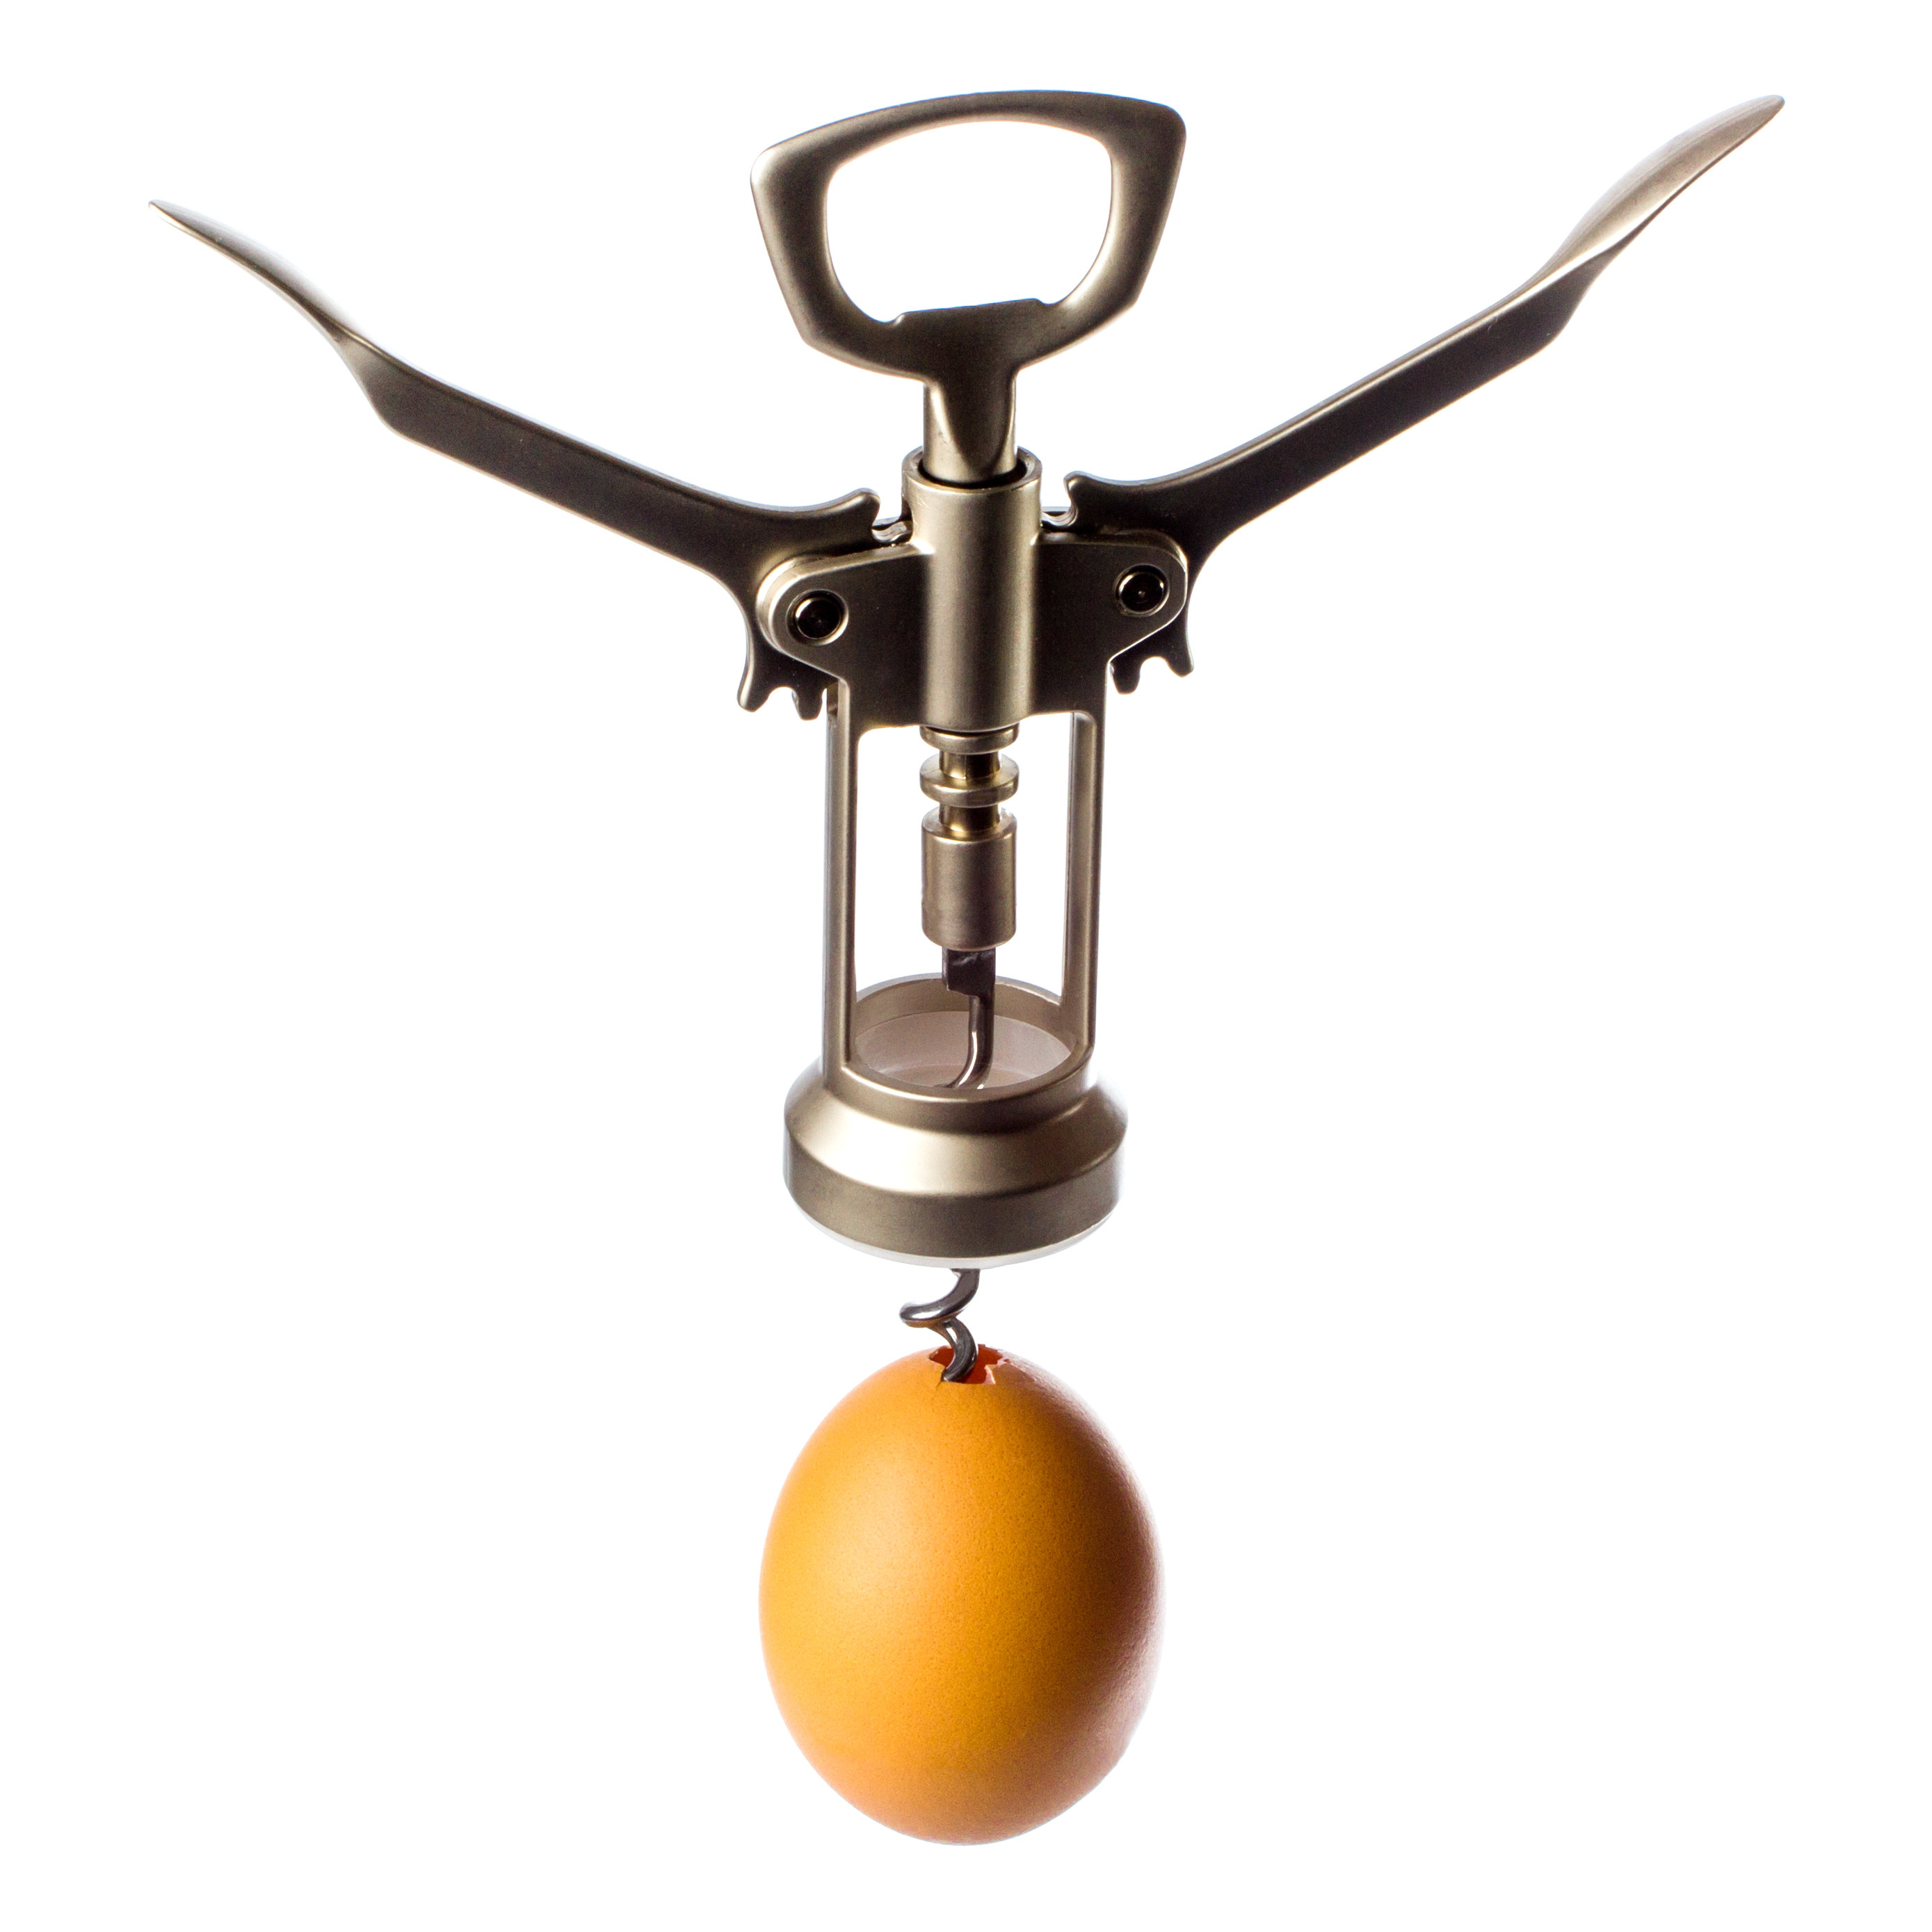 A corkscrew crushing an egg